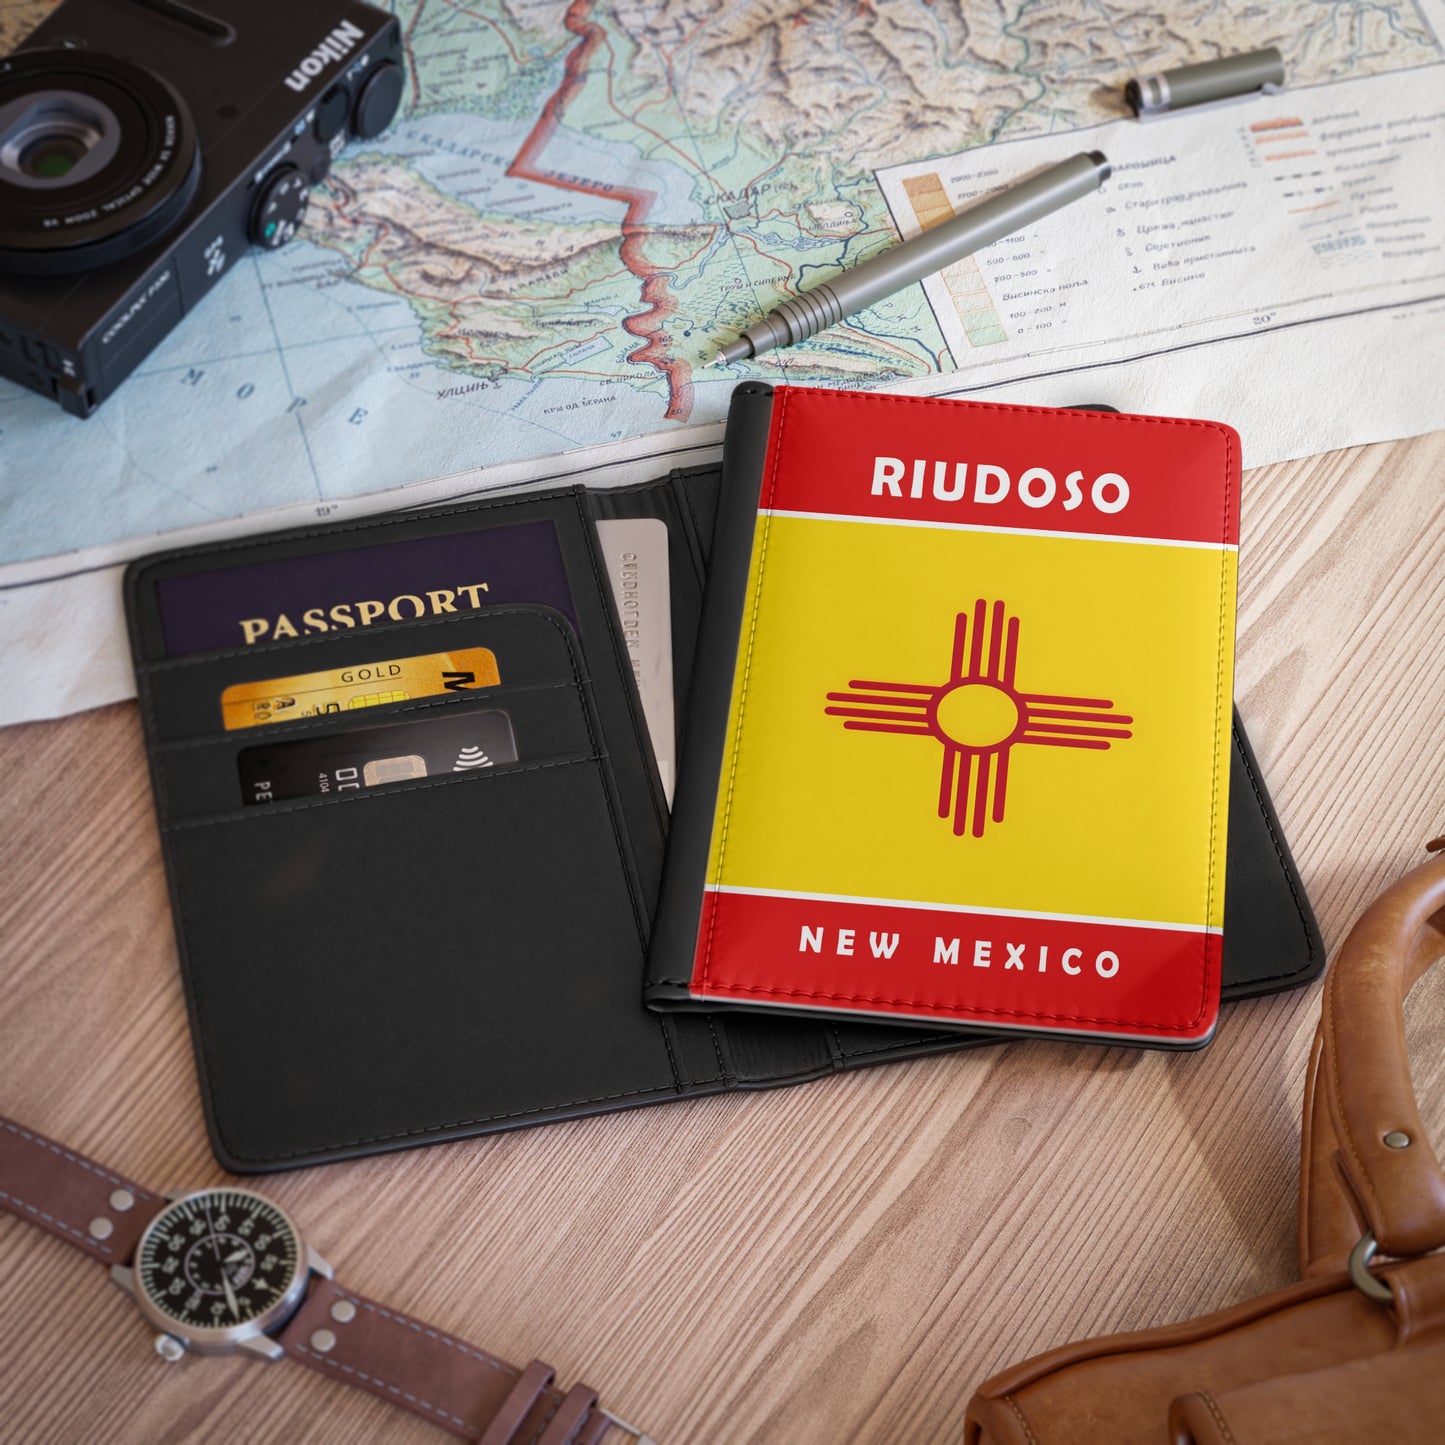 Riudoso New Mexico Passport Cover